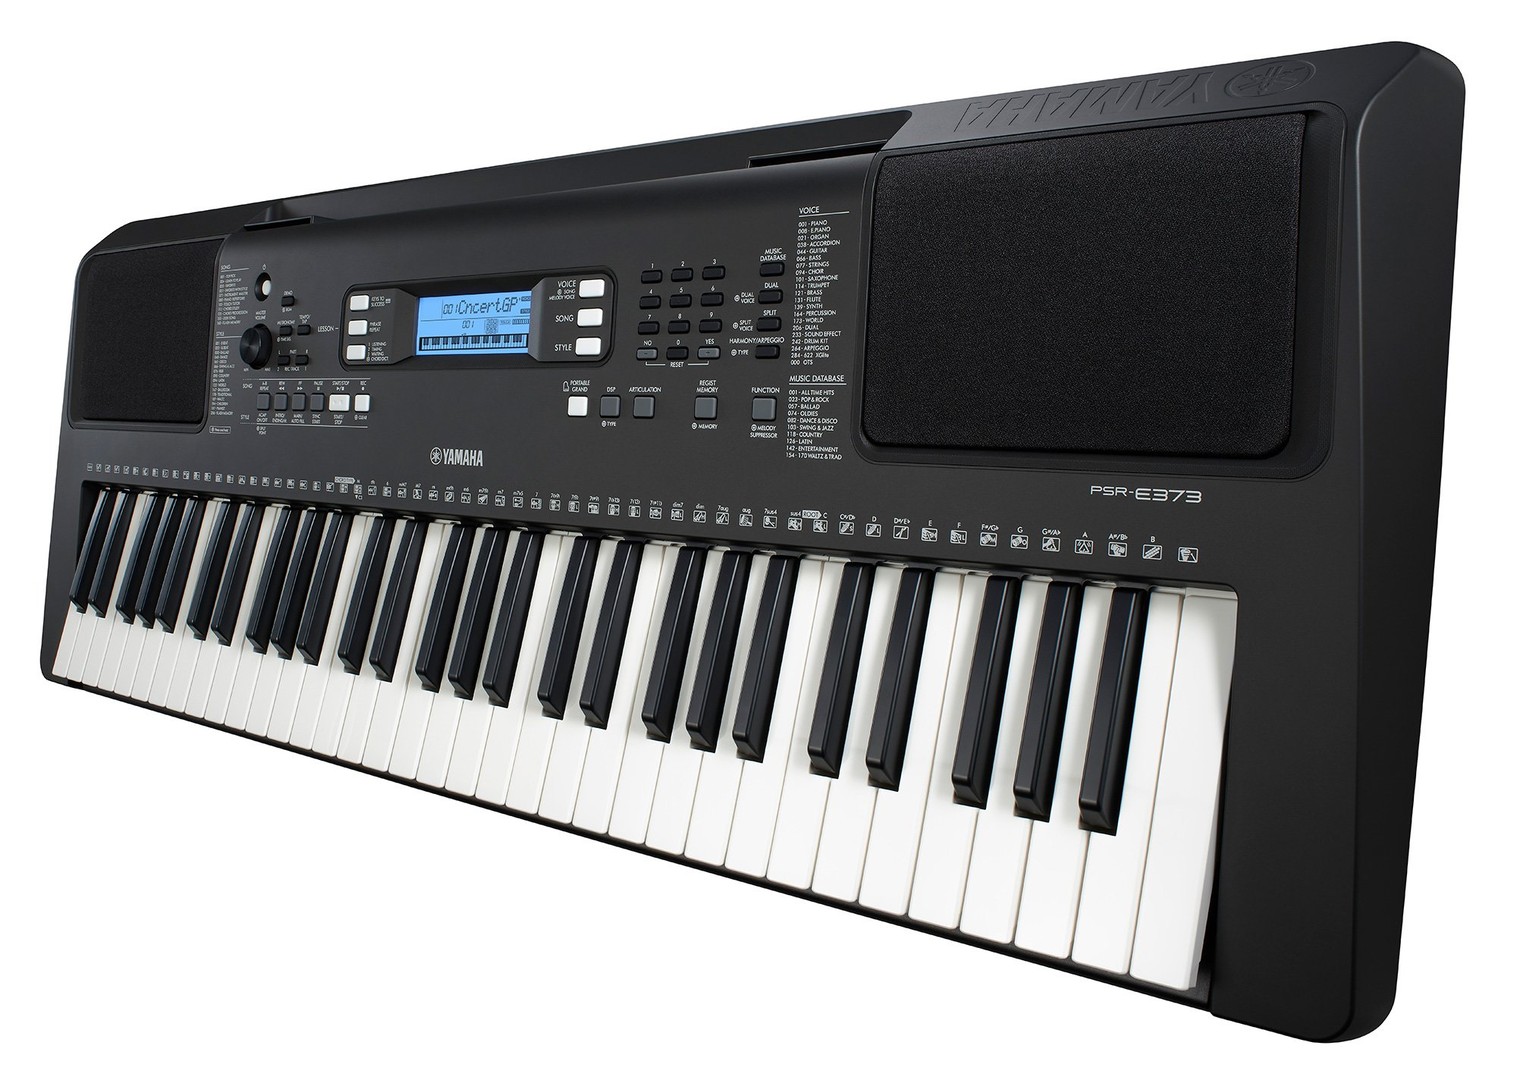 instrumentos musicales - Yamaha PSR E373 piano digital 61 teclas. Fuente de alimentación incluida.